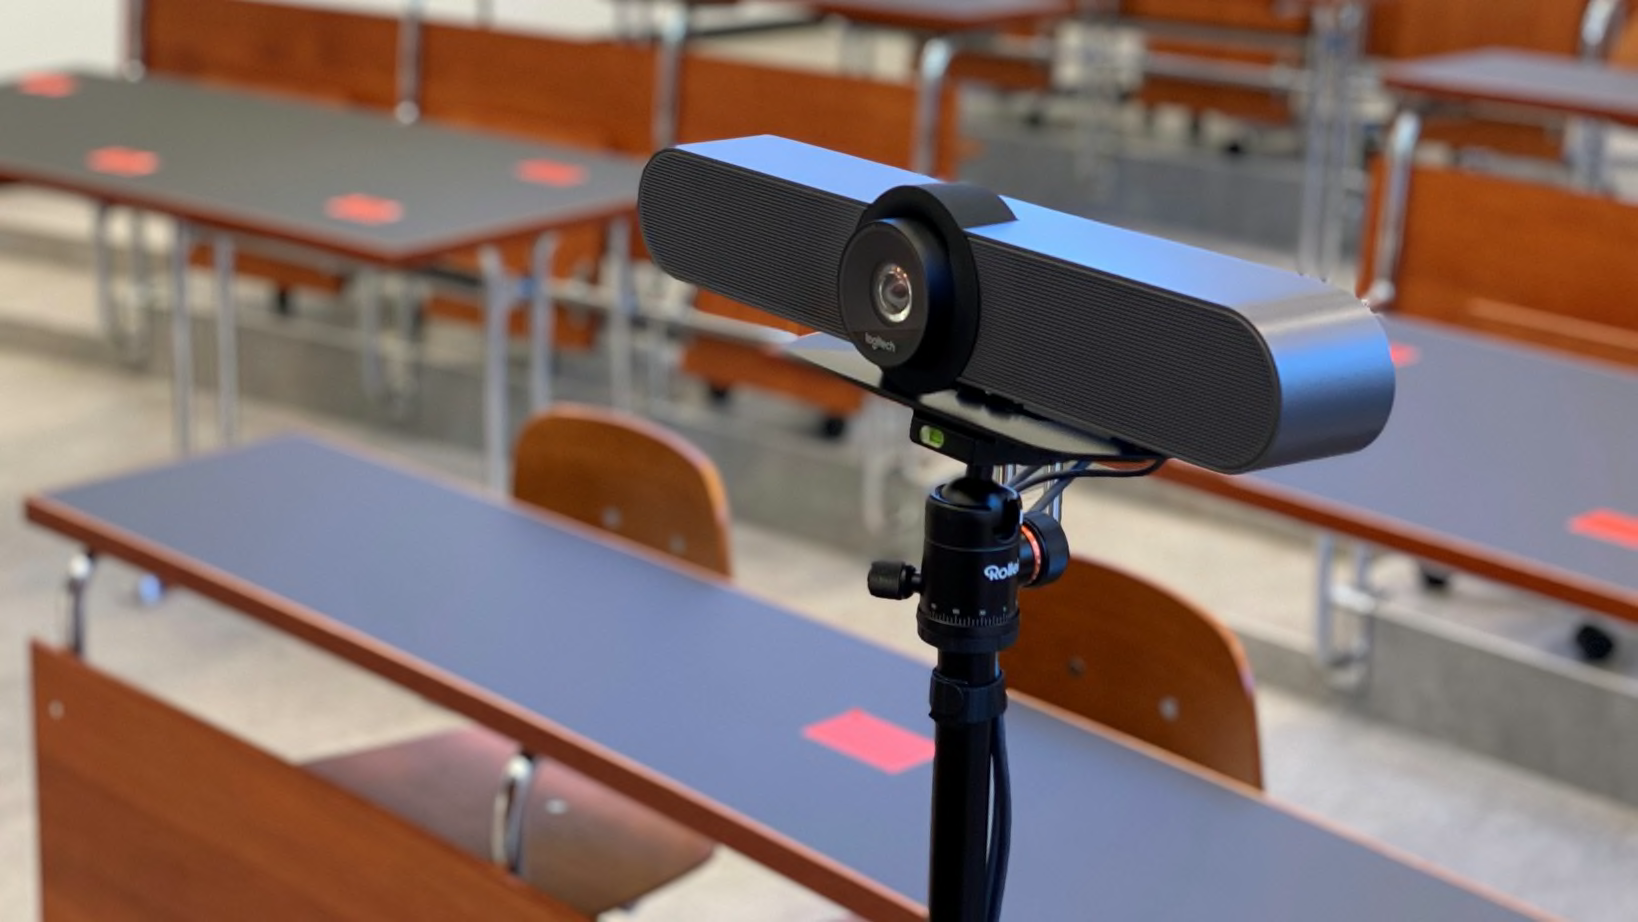 Las clases digitales por videoconferencia complementan la enseñanza presencial con una dotación mínima de personal